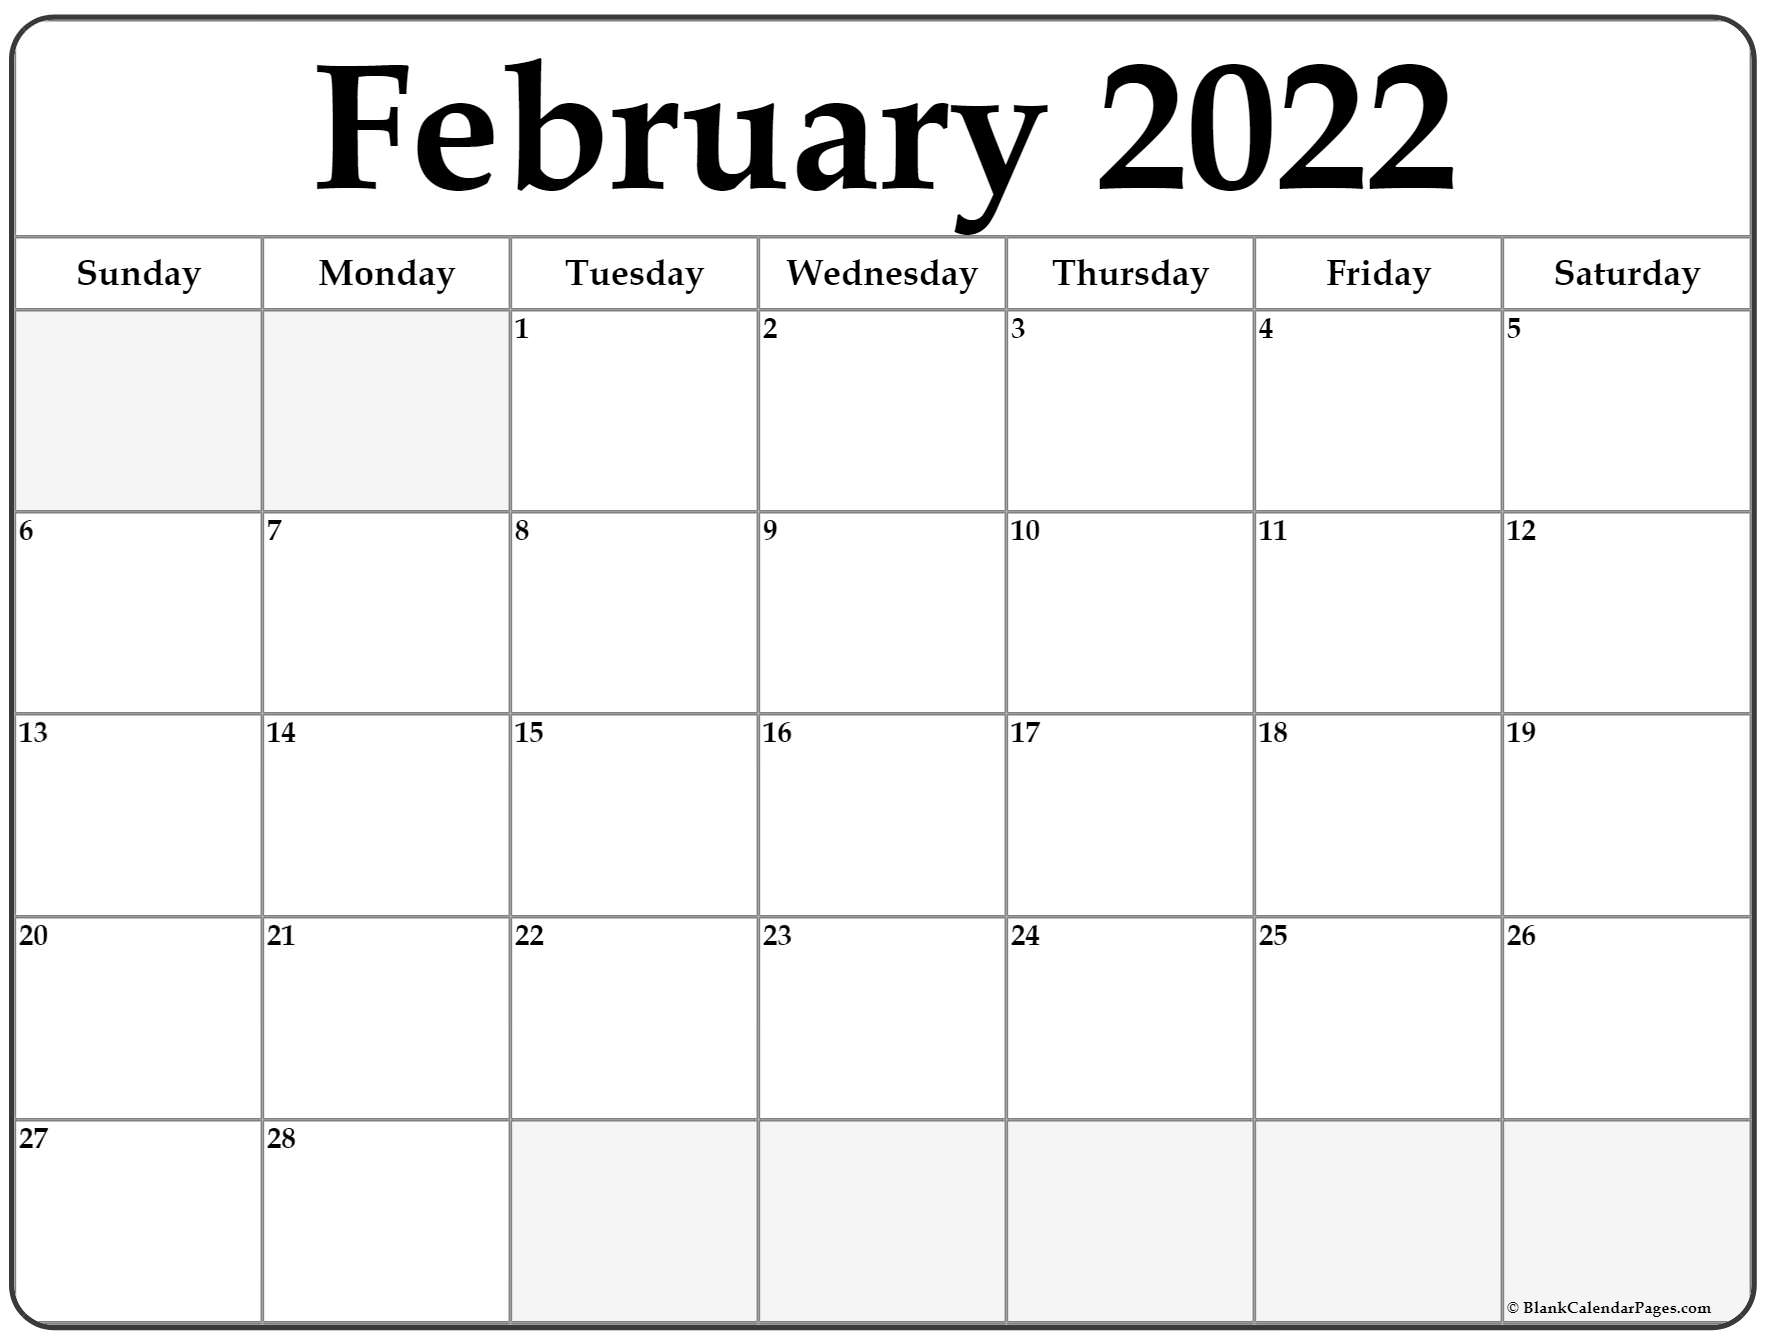 February 2022 Calendar Free Printable Calendar Templates 1